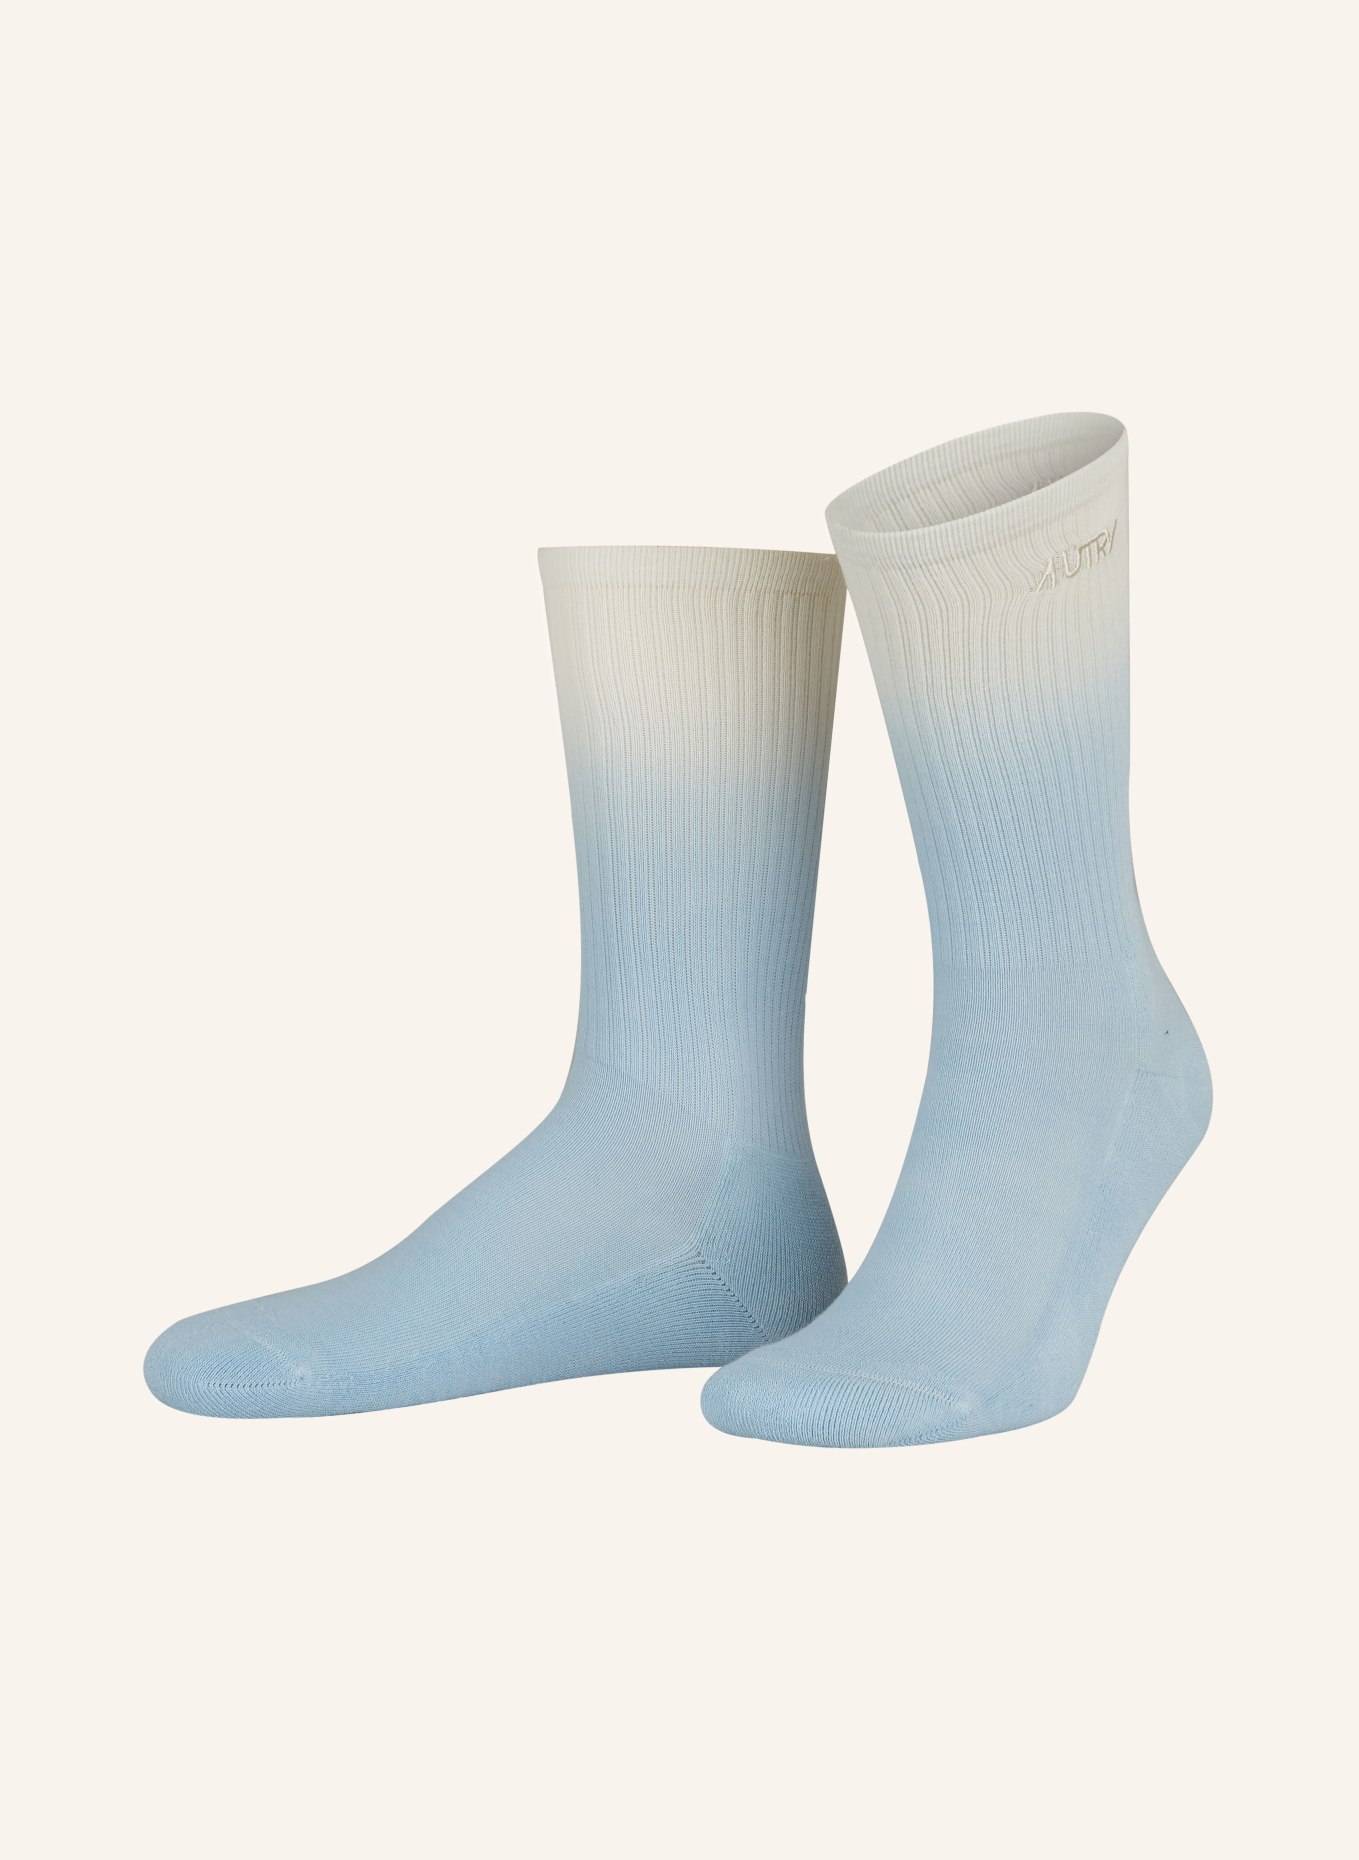 AUTRY Socken, Farbe: 68OA Accessories GLDN/AZU (Bild 1)